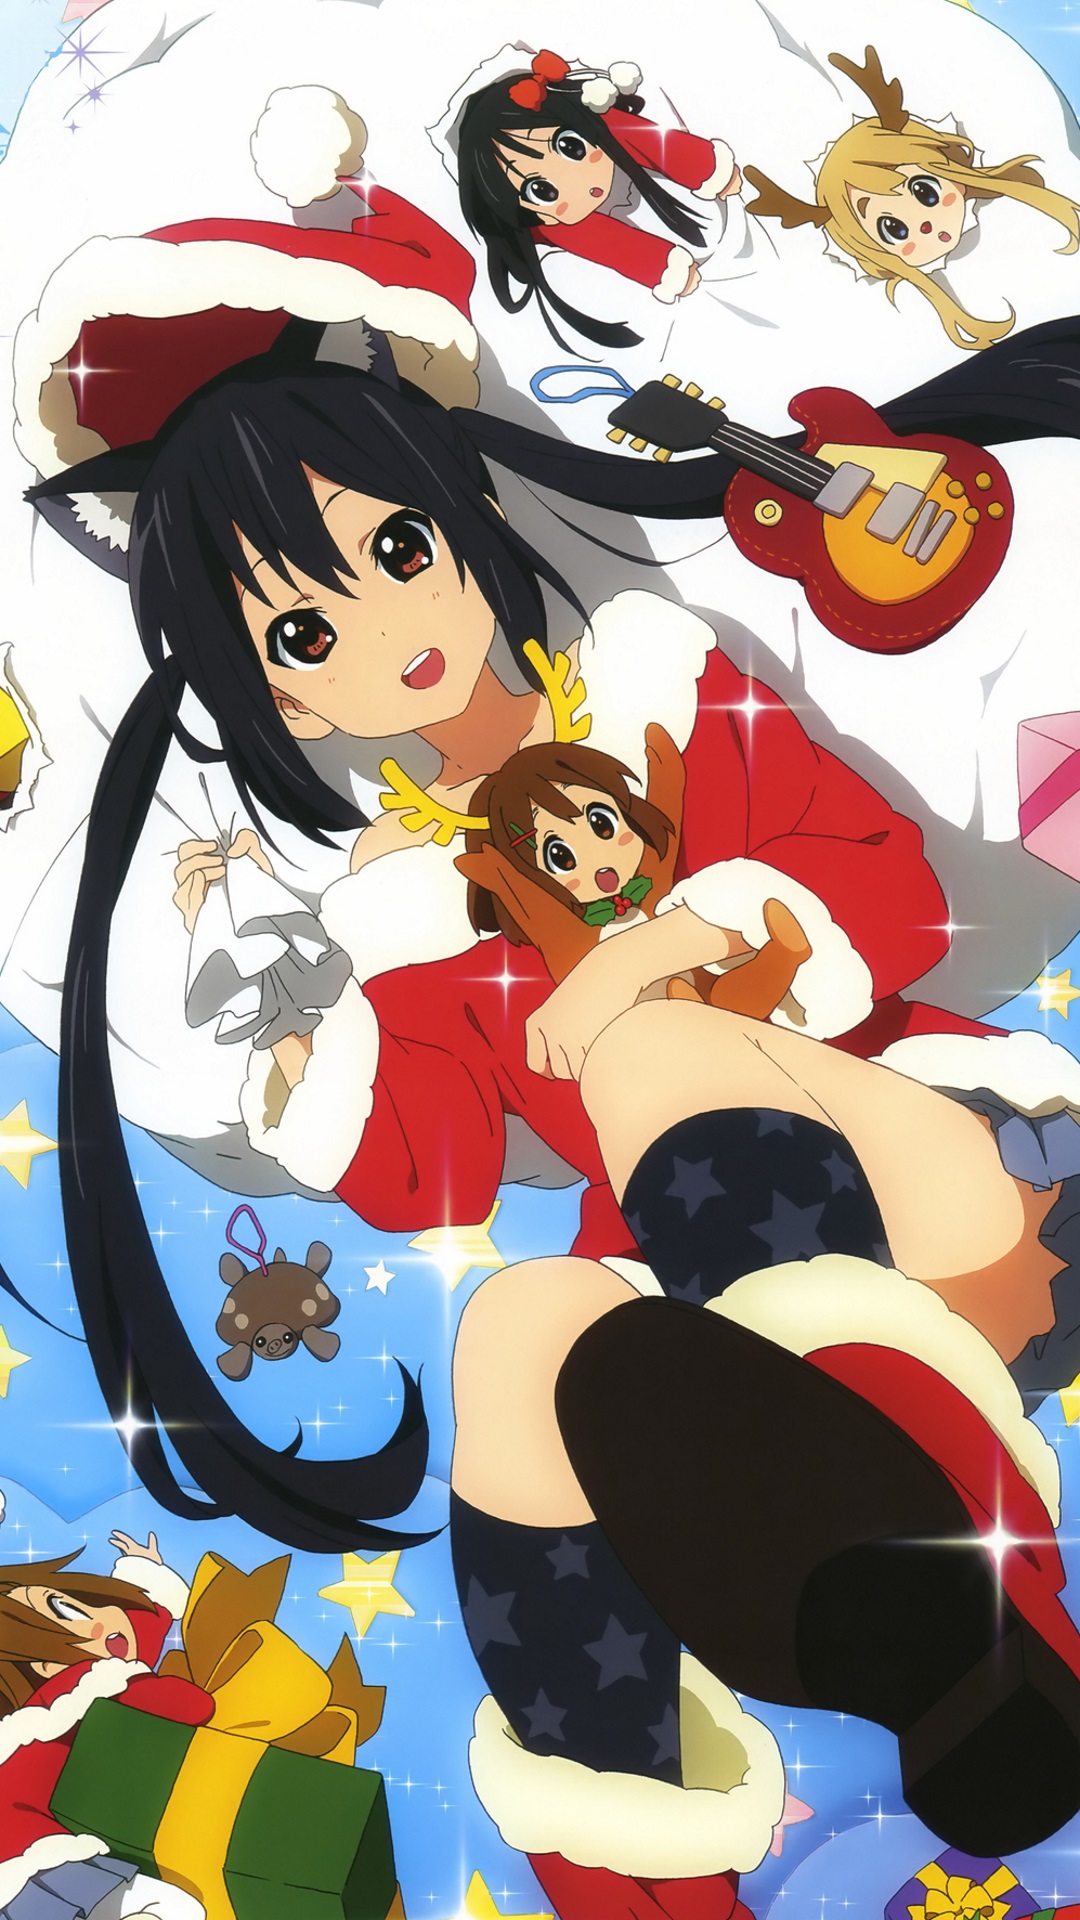 Christmas 2015 Anime K On Sony Xperia Z Wallpaper 1080 1920 Kawaii Mobile